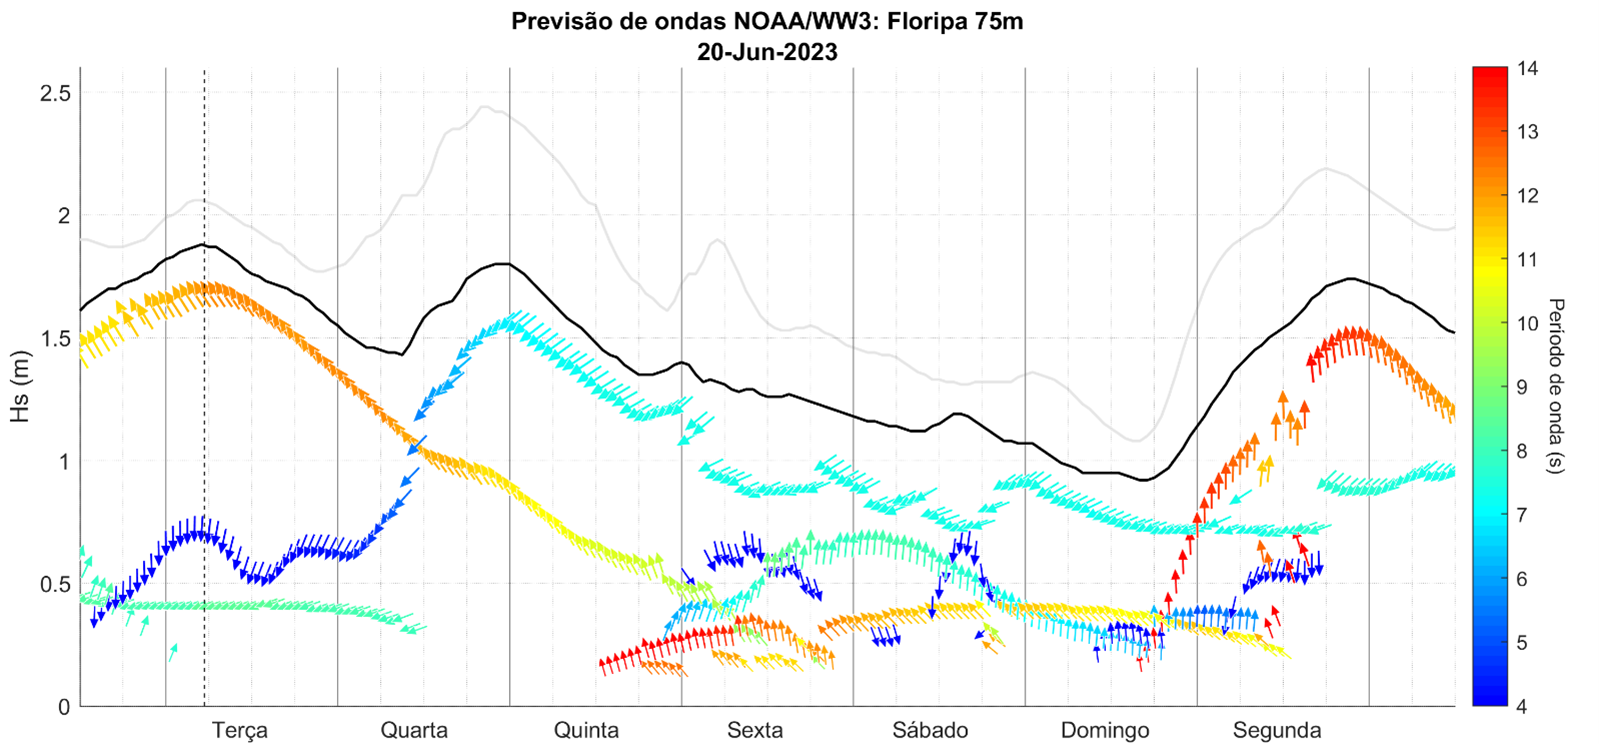 Previsão a partir dos dados de satélite da NOAA na plataforma continental da região de Florianópolis (75 metros de profundidade), mostra a evolução da ondulação nesta semana e a chegada de uma nova ondulação na segunda-feira 26/06.